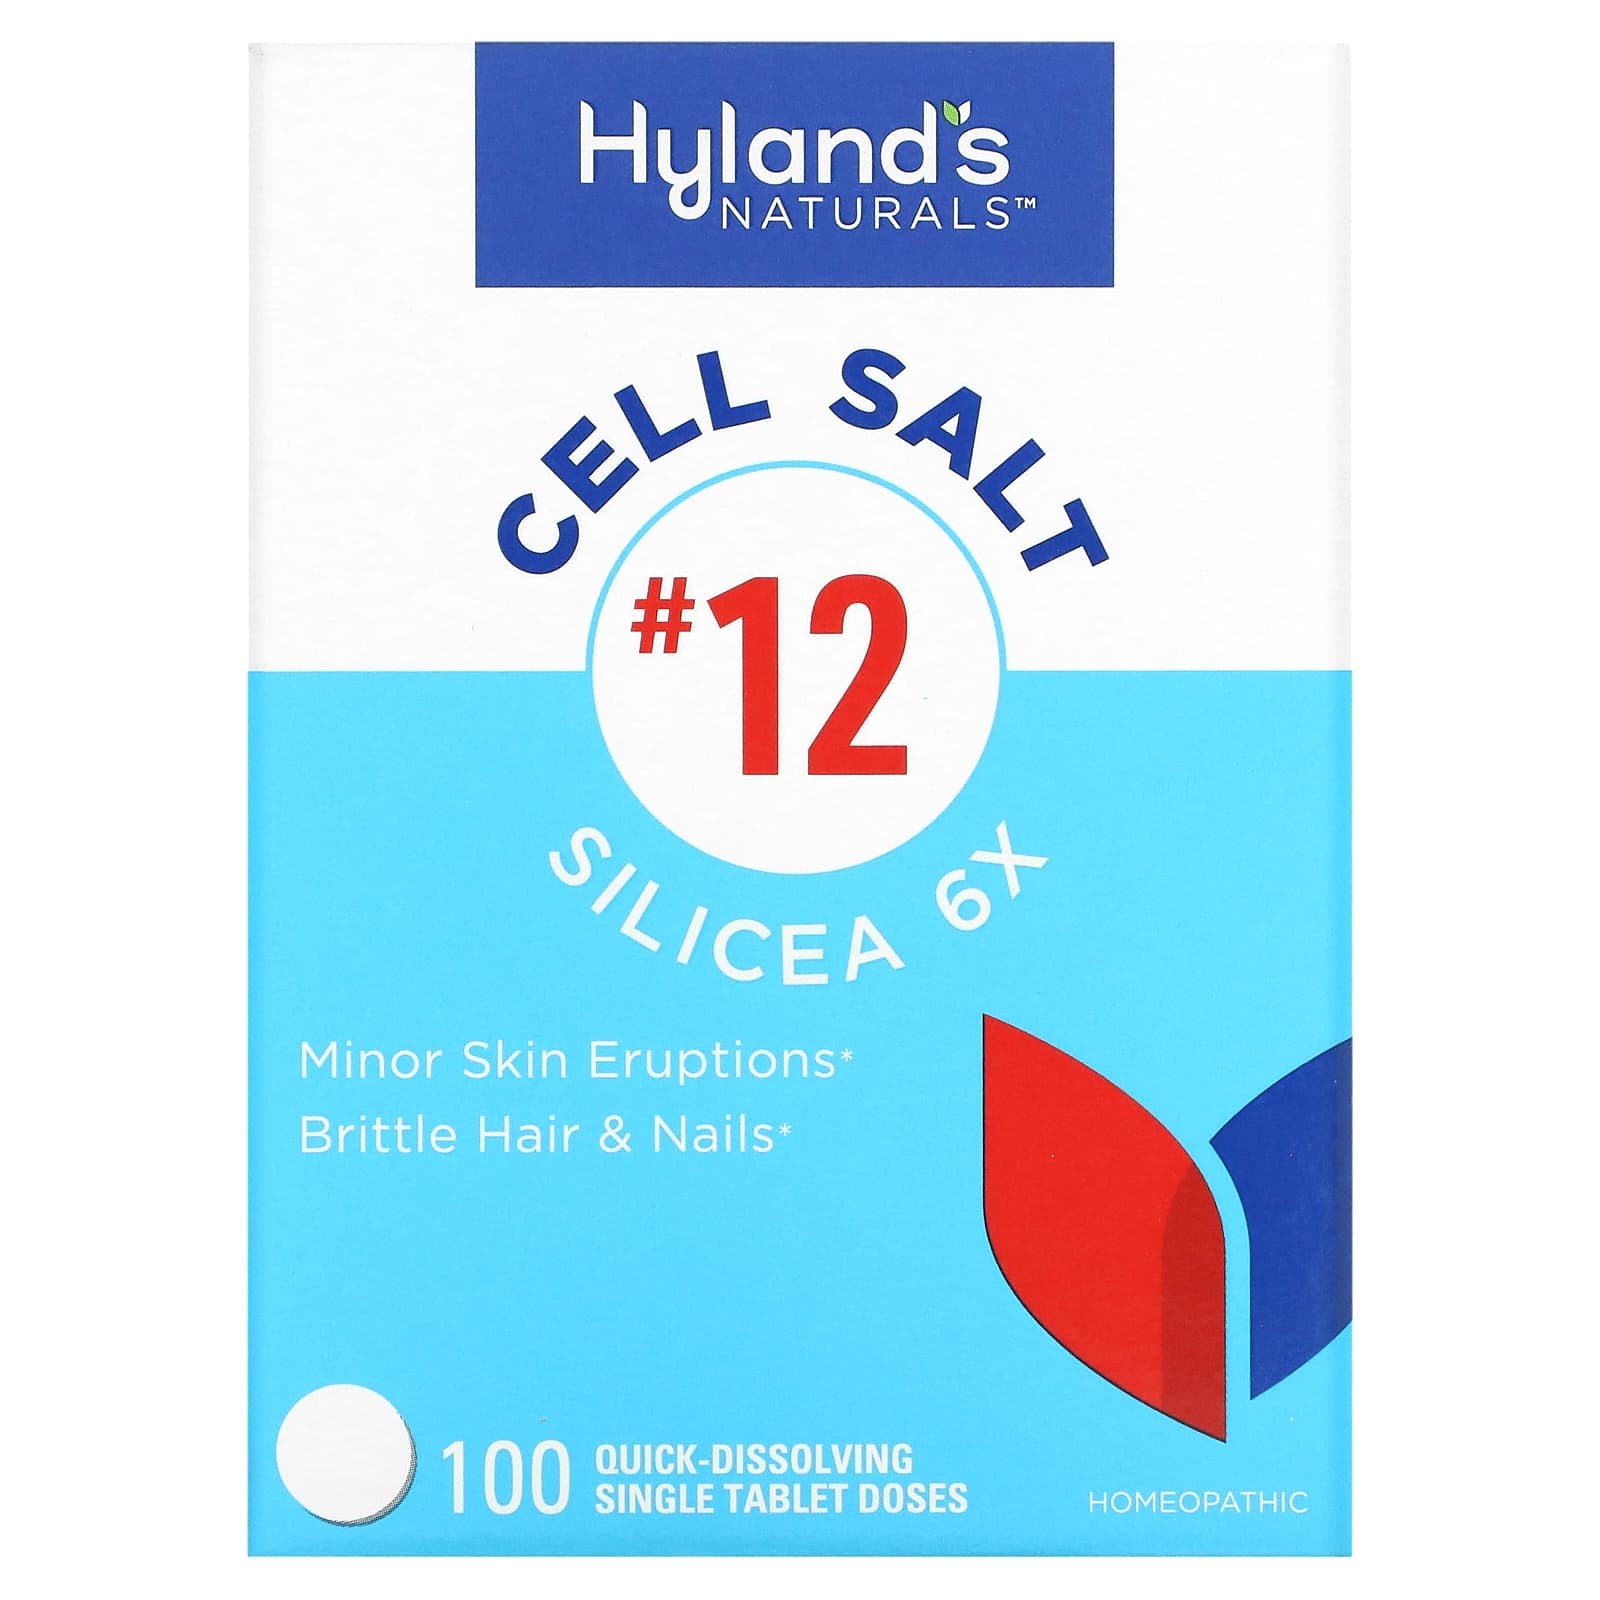 Клеточная Соль №12 / Силицея 6X Hyland's, 100 быстрорастворимых таблеток hyland s naturals клеточная соль 10 natrum phosphoricum 6x 100 таблеток